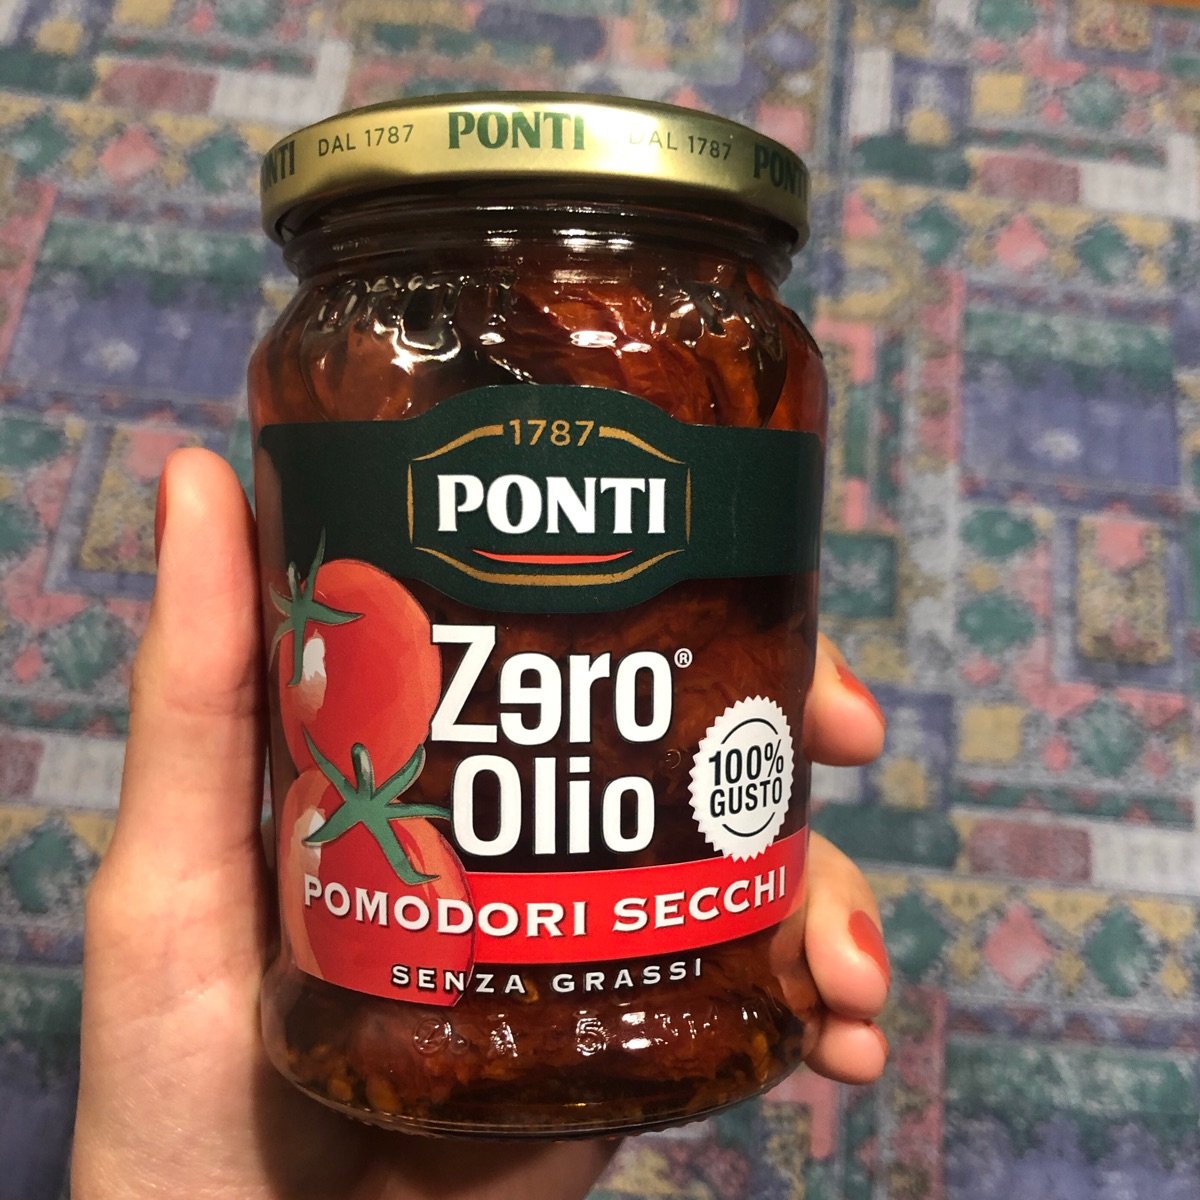 Ponti Zero olio pomodori secchi Reviews | abillion